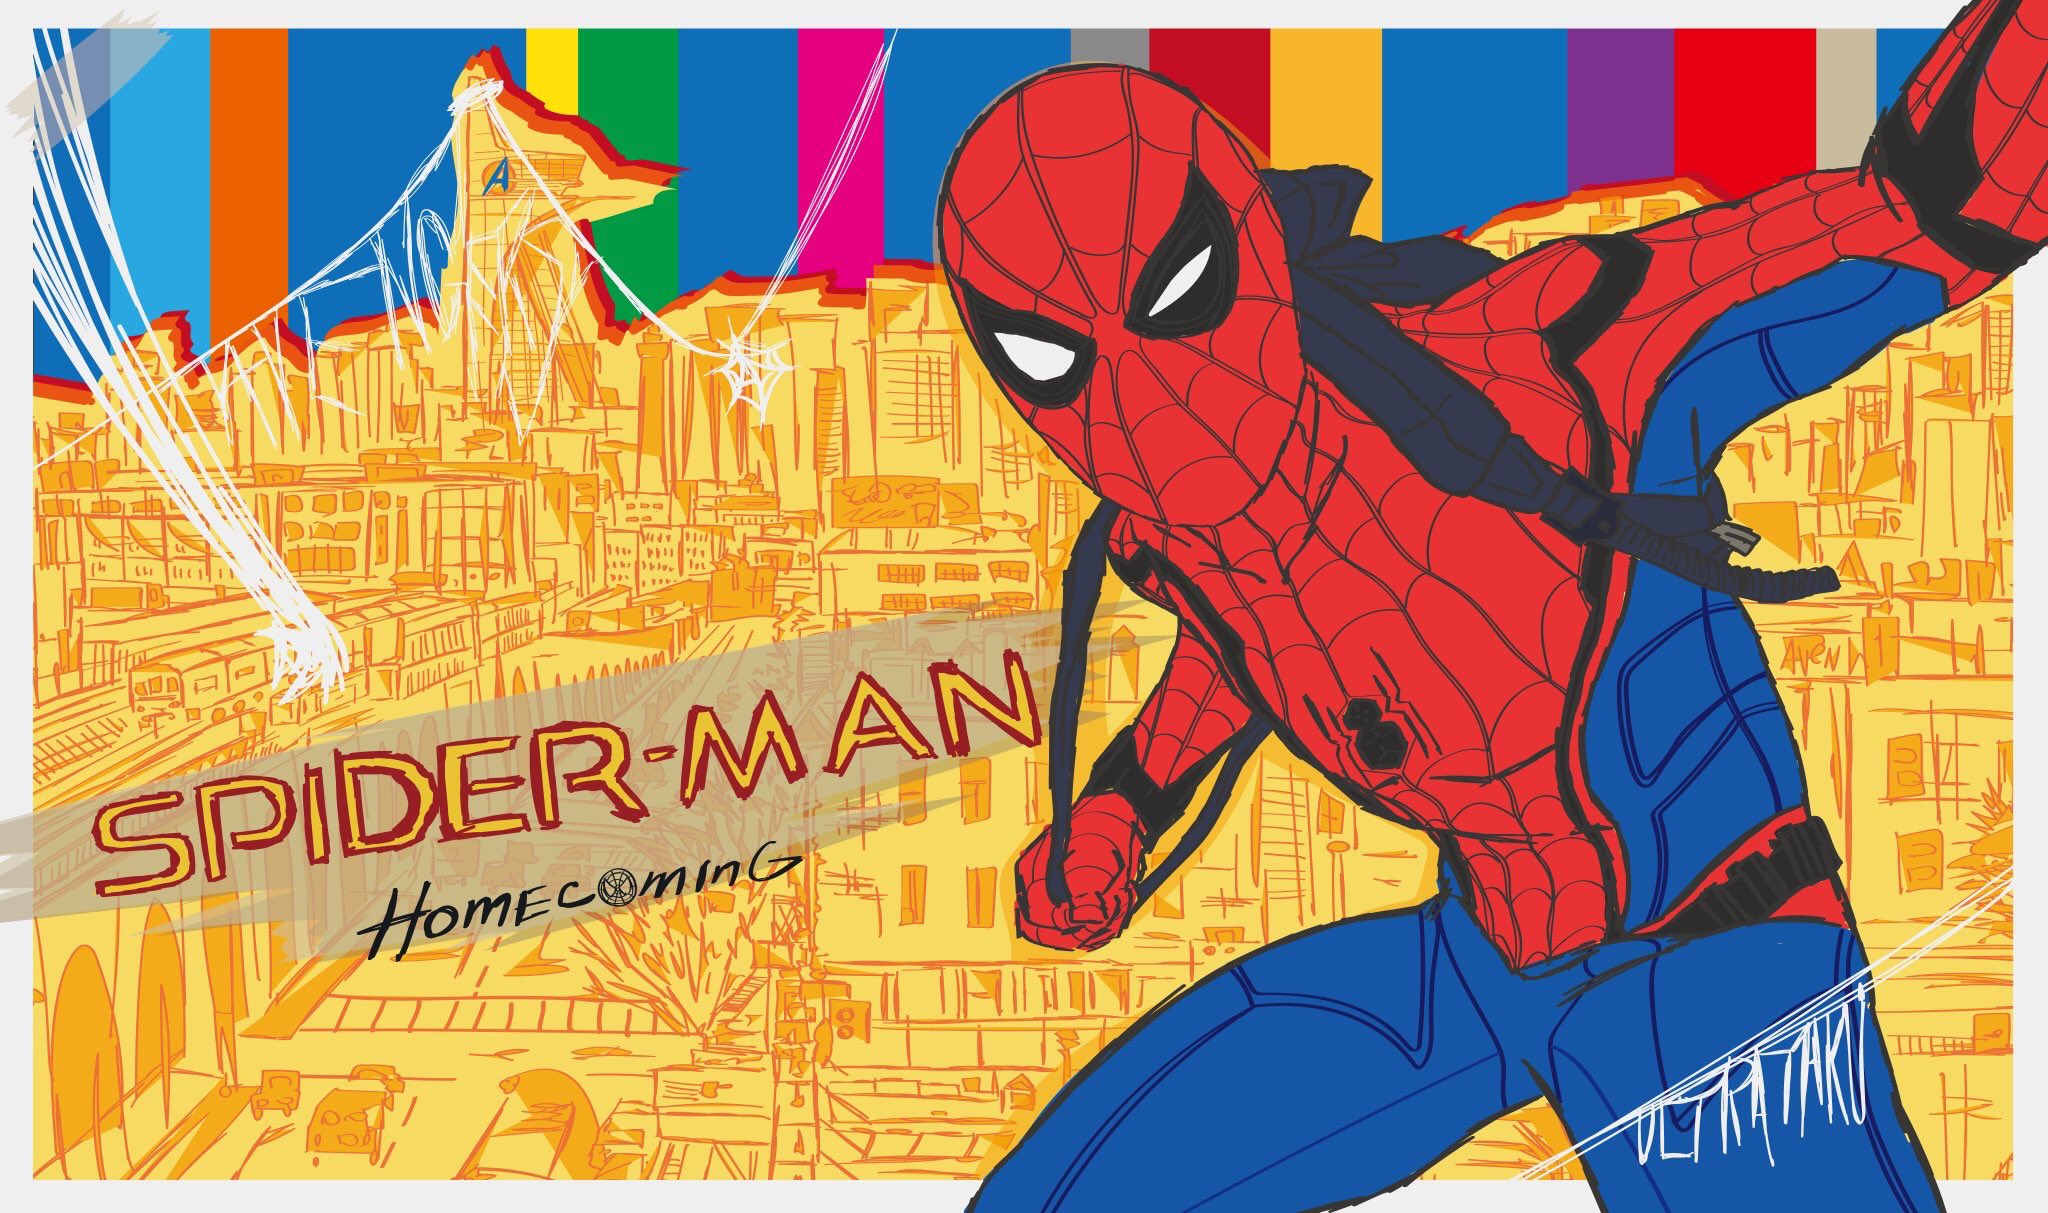 Ultrataku コミケ8 13土曜日東地区uブロック09a Spider Man Homecoming 描きましたホムカミスパイディ 公開日だし観たままのテンションで描いてしまった 笑 一番好きなスパイディでした 楽しく描けた スパイダーマン スパイダーマンホーム